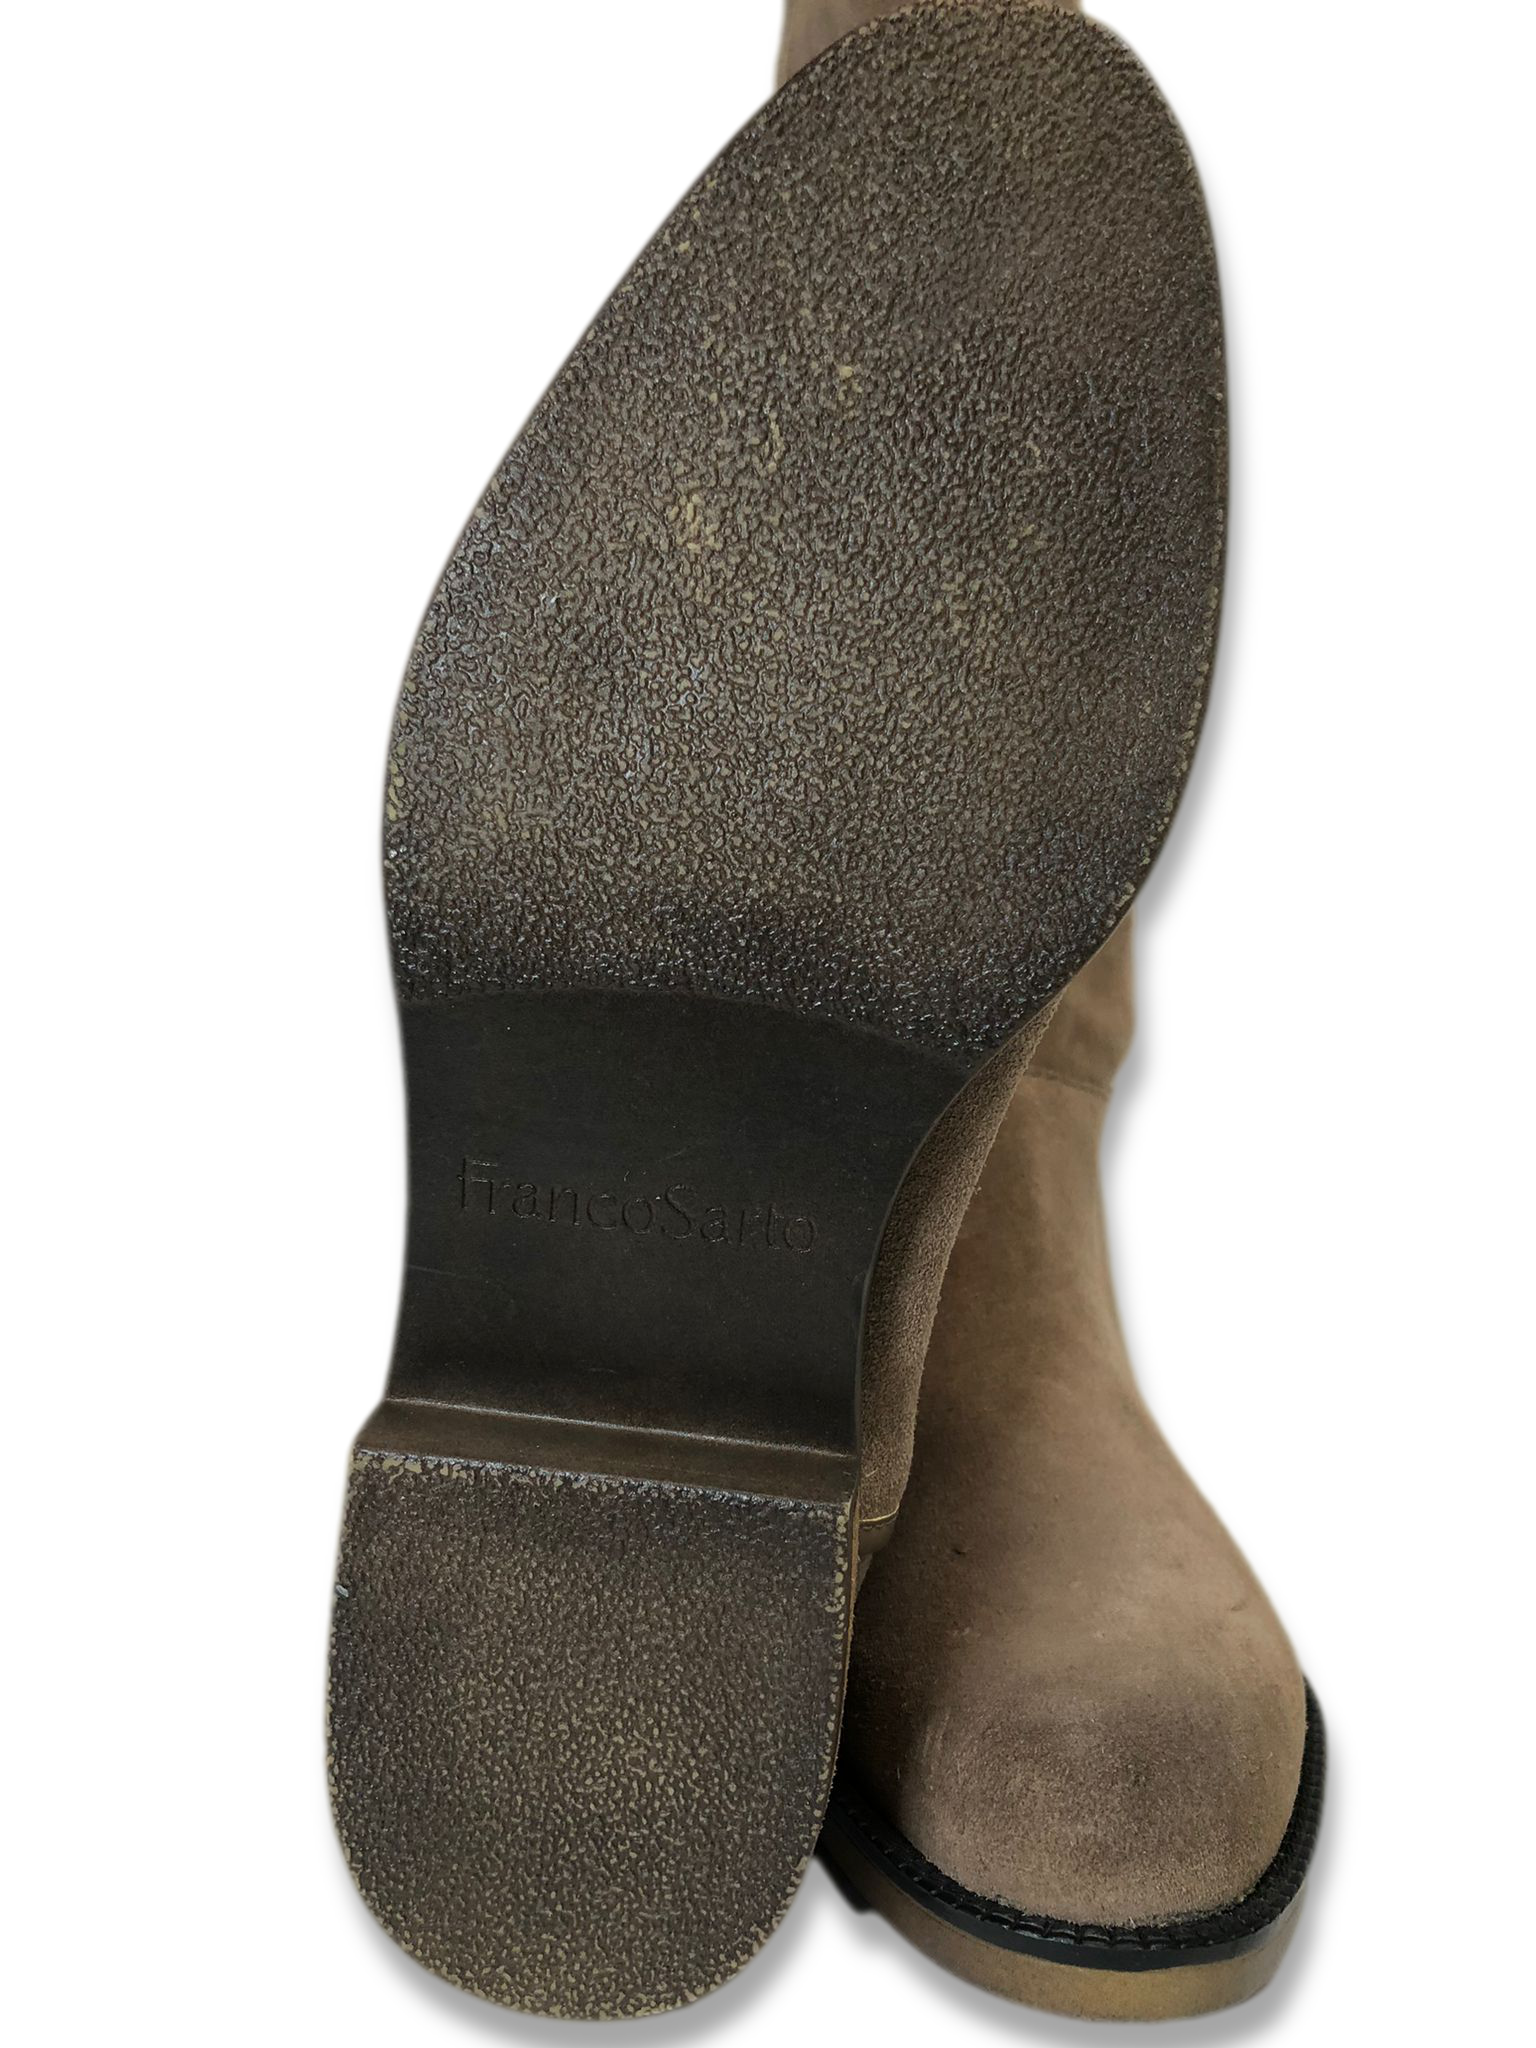 Franco Sarto Suede Medium Calf Tall Shaft Boot - Christine